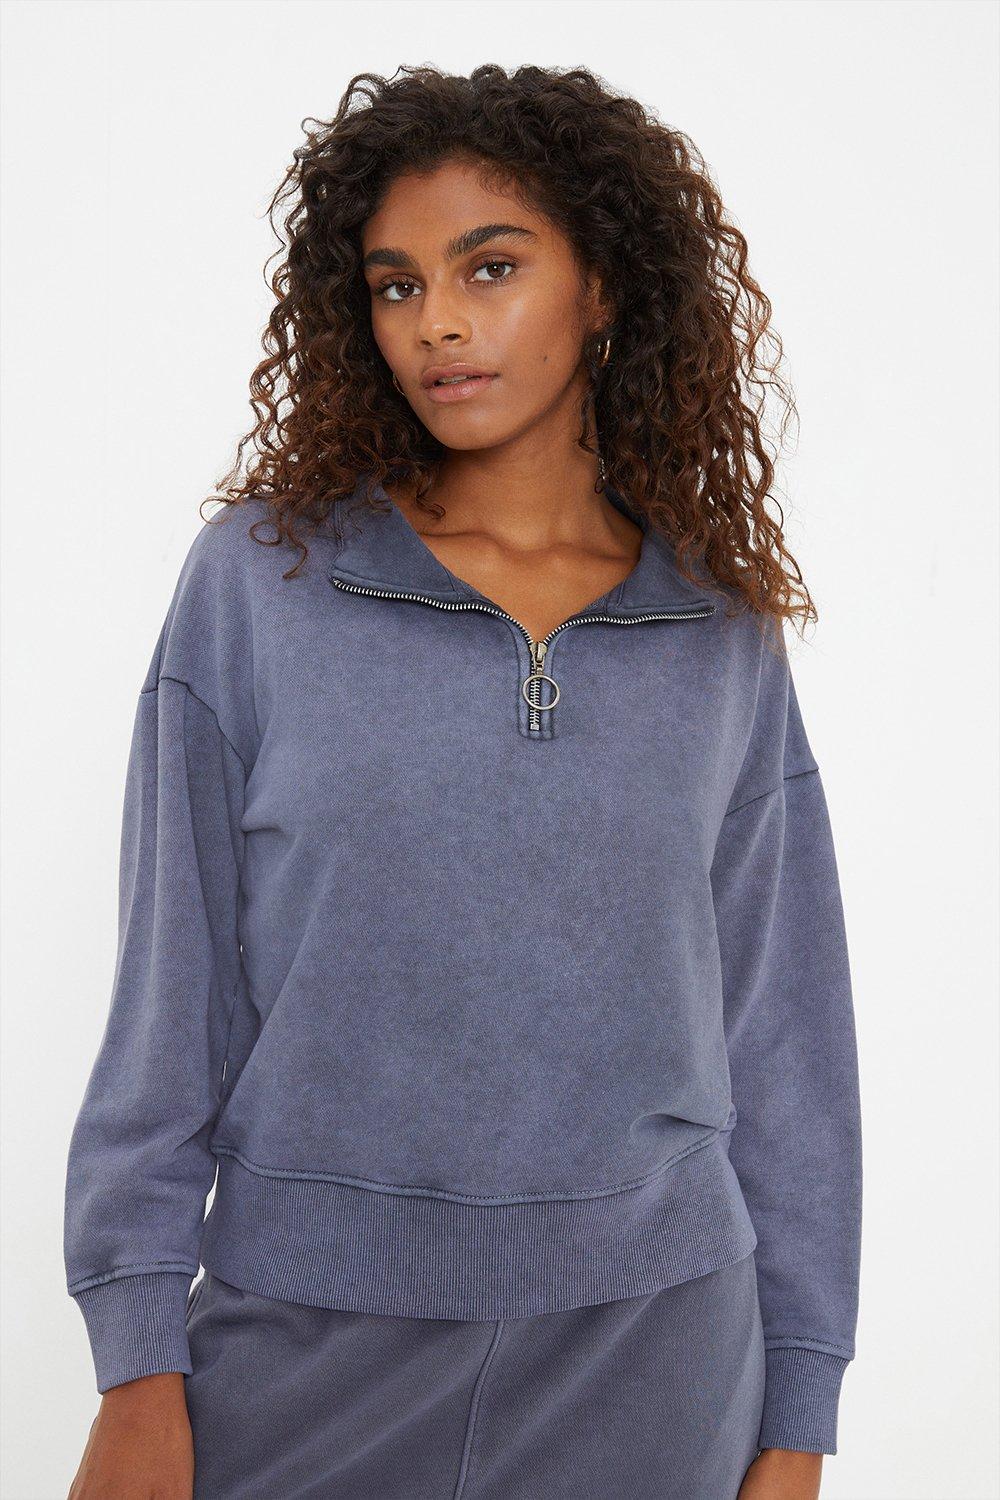 Women's Half Zip Acid Wash Sweatshirt - grey - M